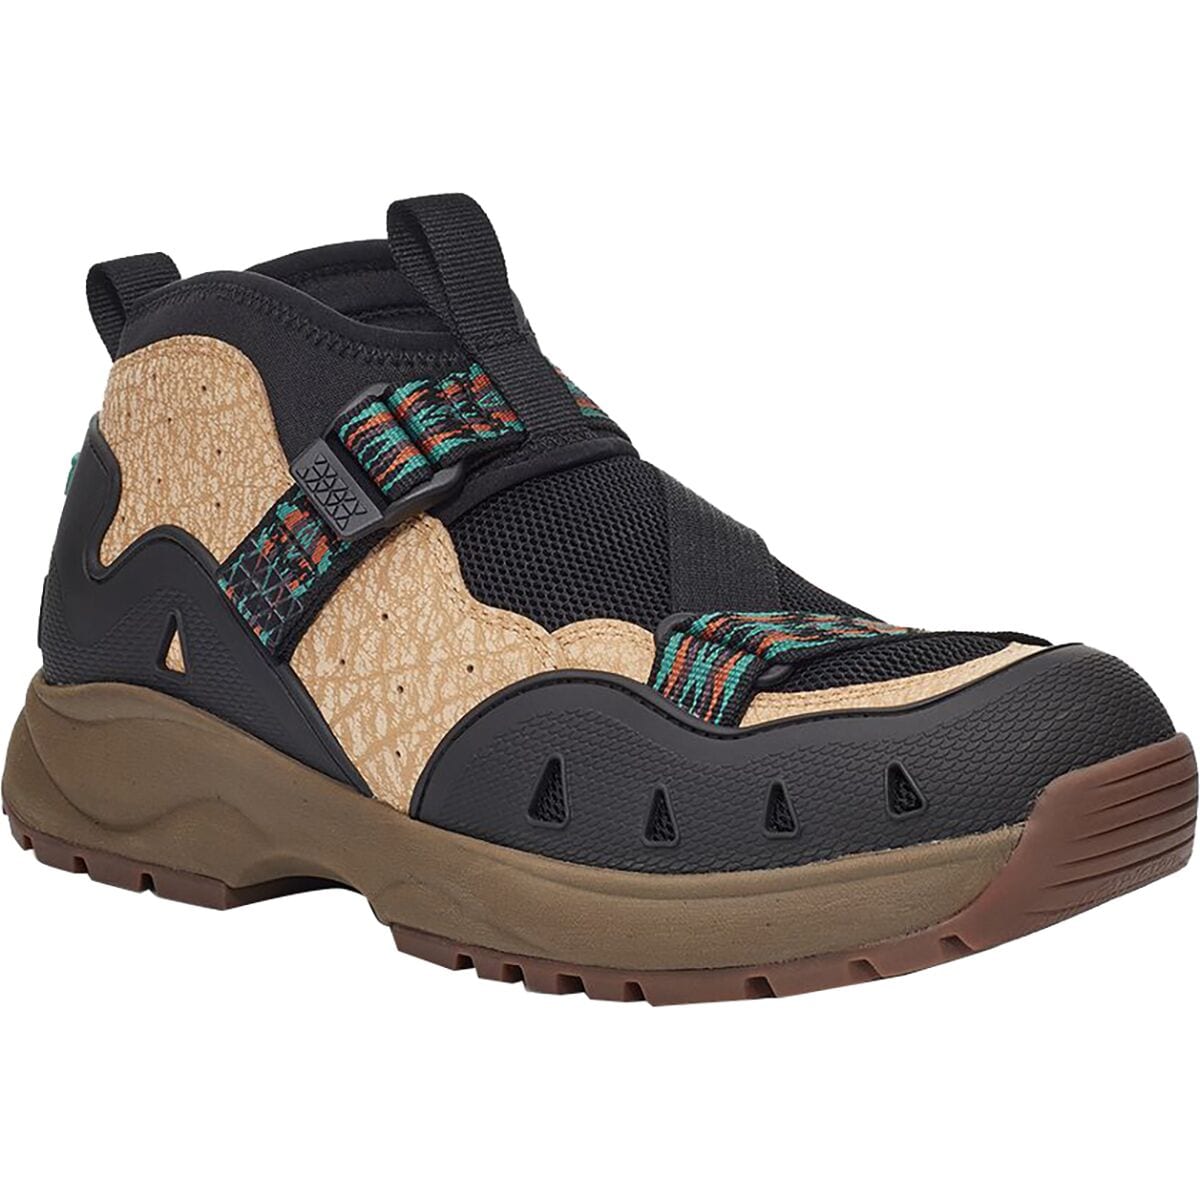 Teva Revive '94 Mid Hiking Shoe - Men's - Footwear